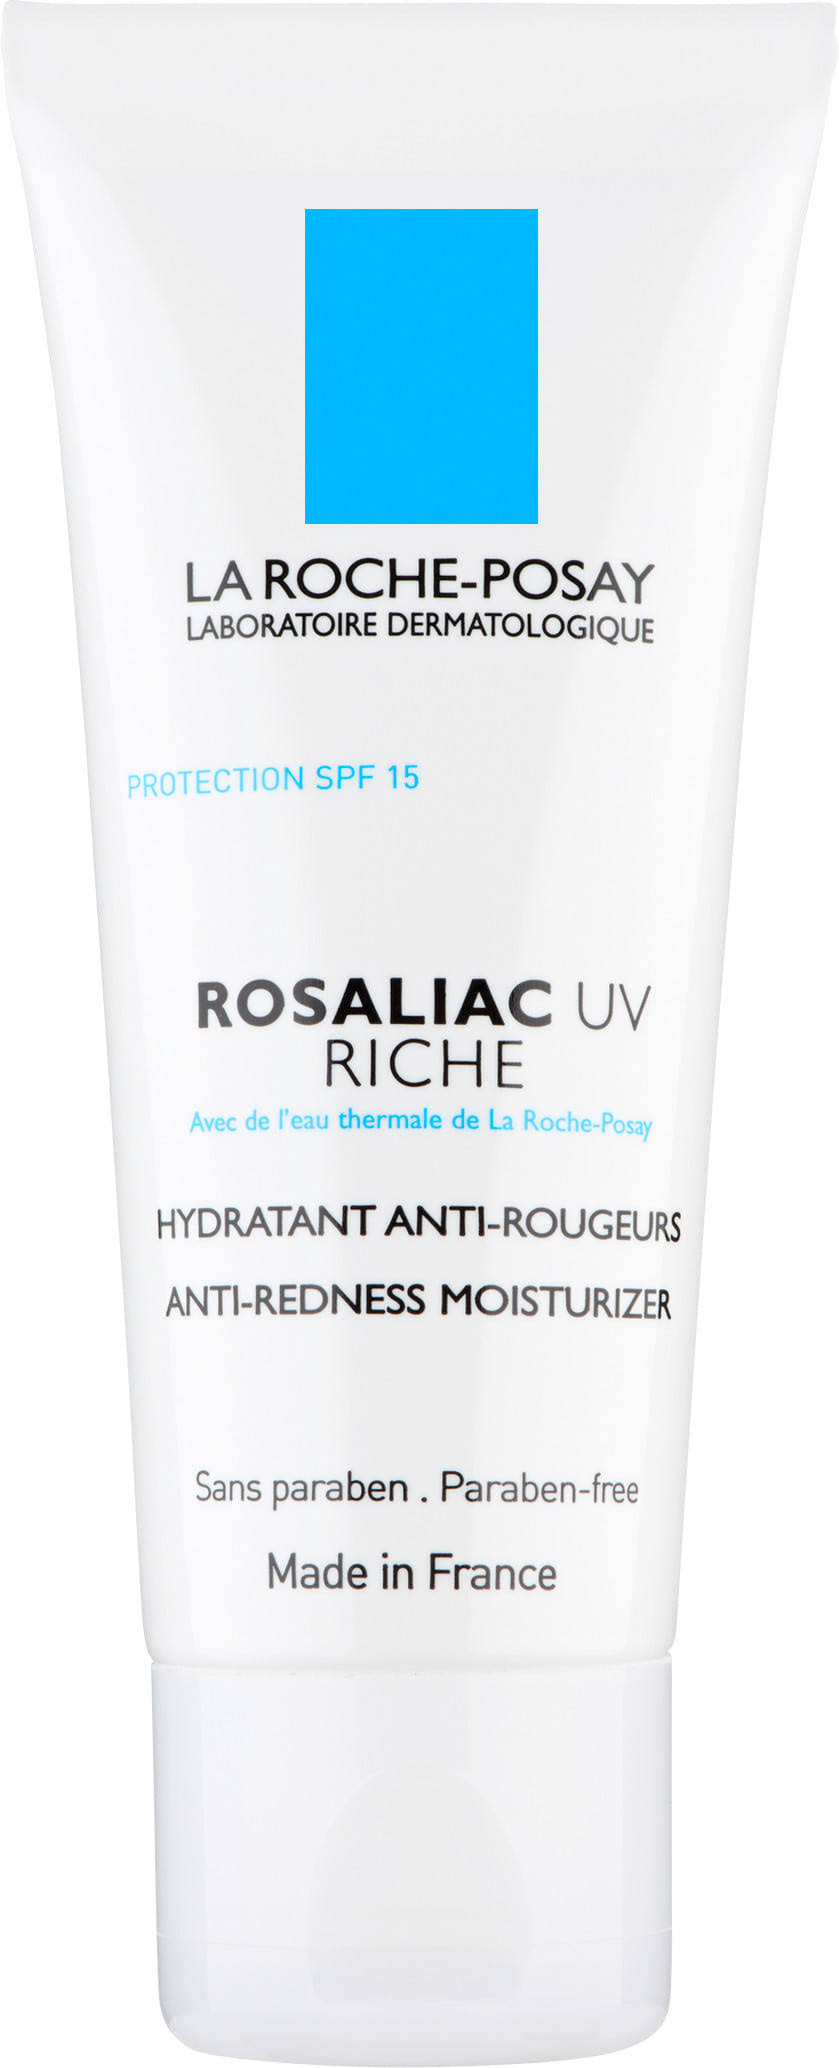 La Roche-Posay Rosaliac UV Riche Anti-Redness Moisturizer - 40ml